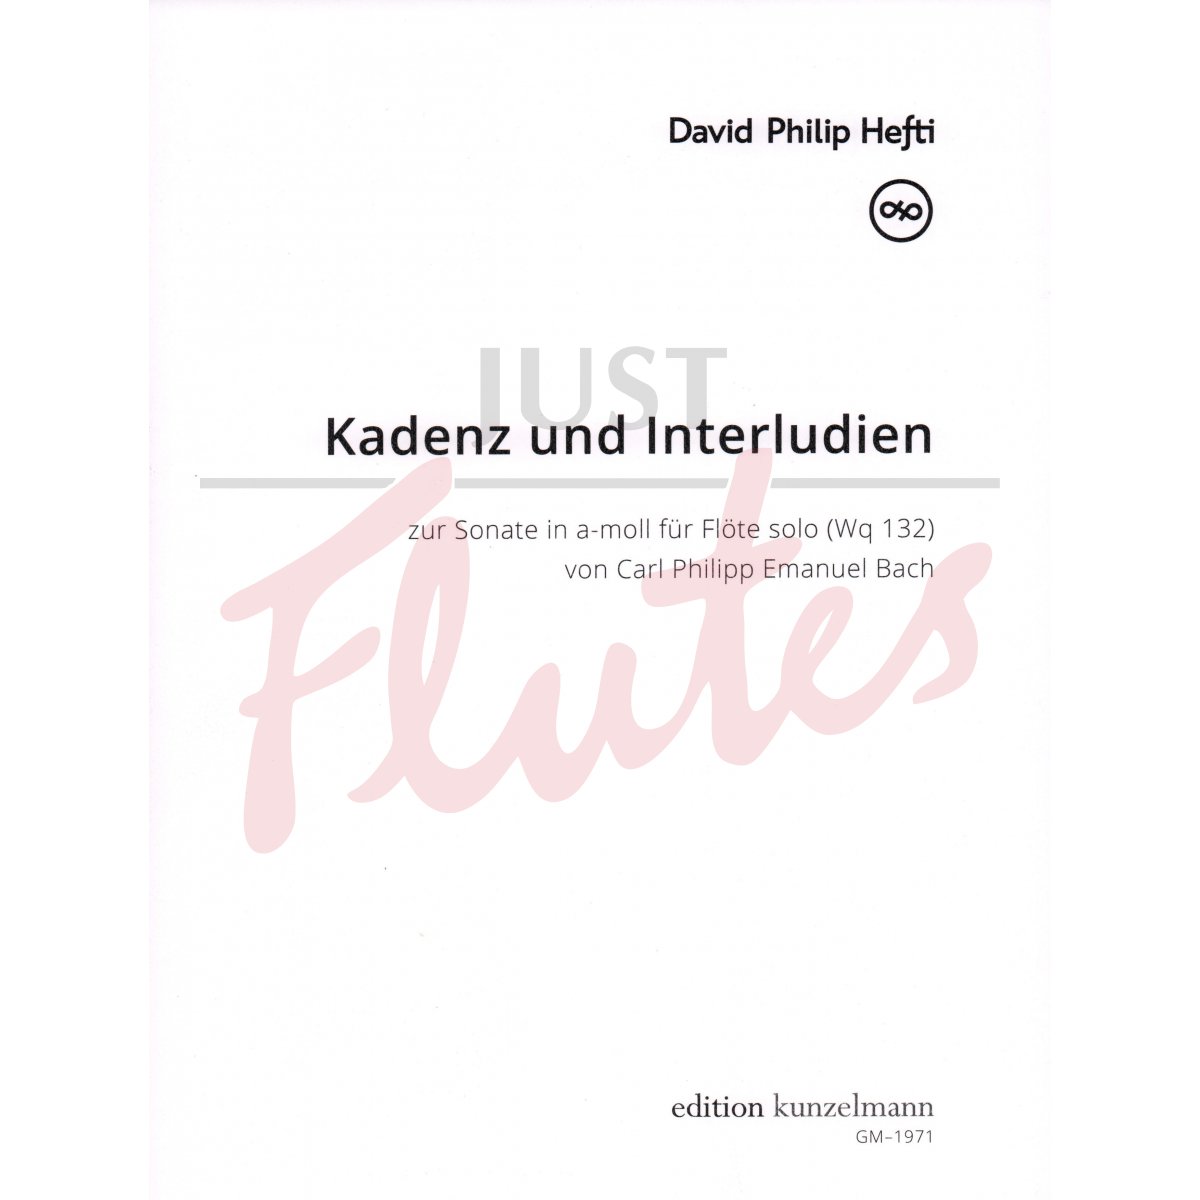 Cadenzas and Interludes for Sonata in A minor (Wq 132) for Solo Flute